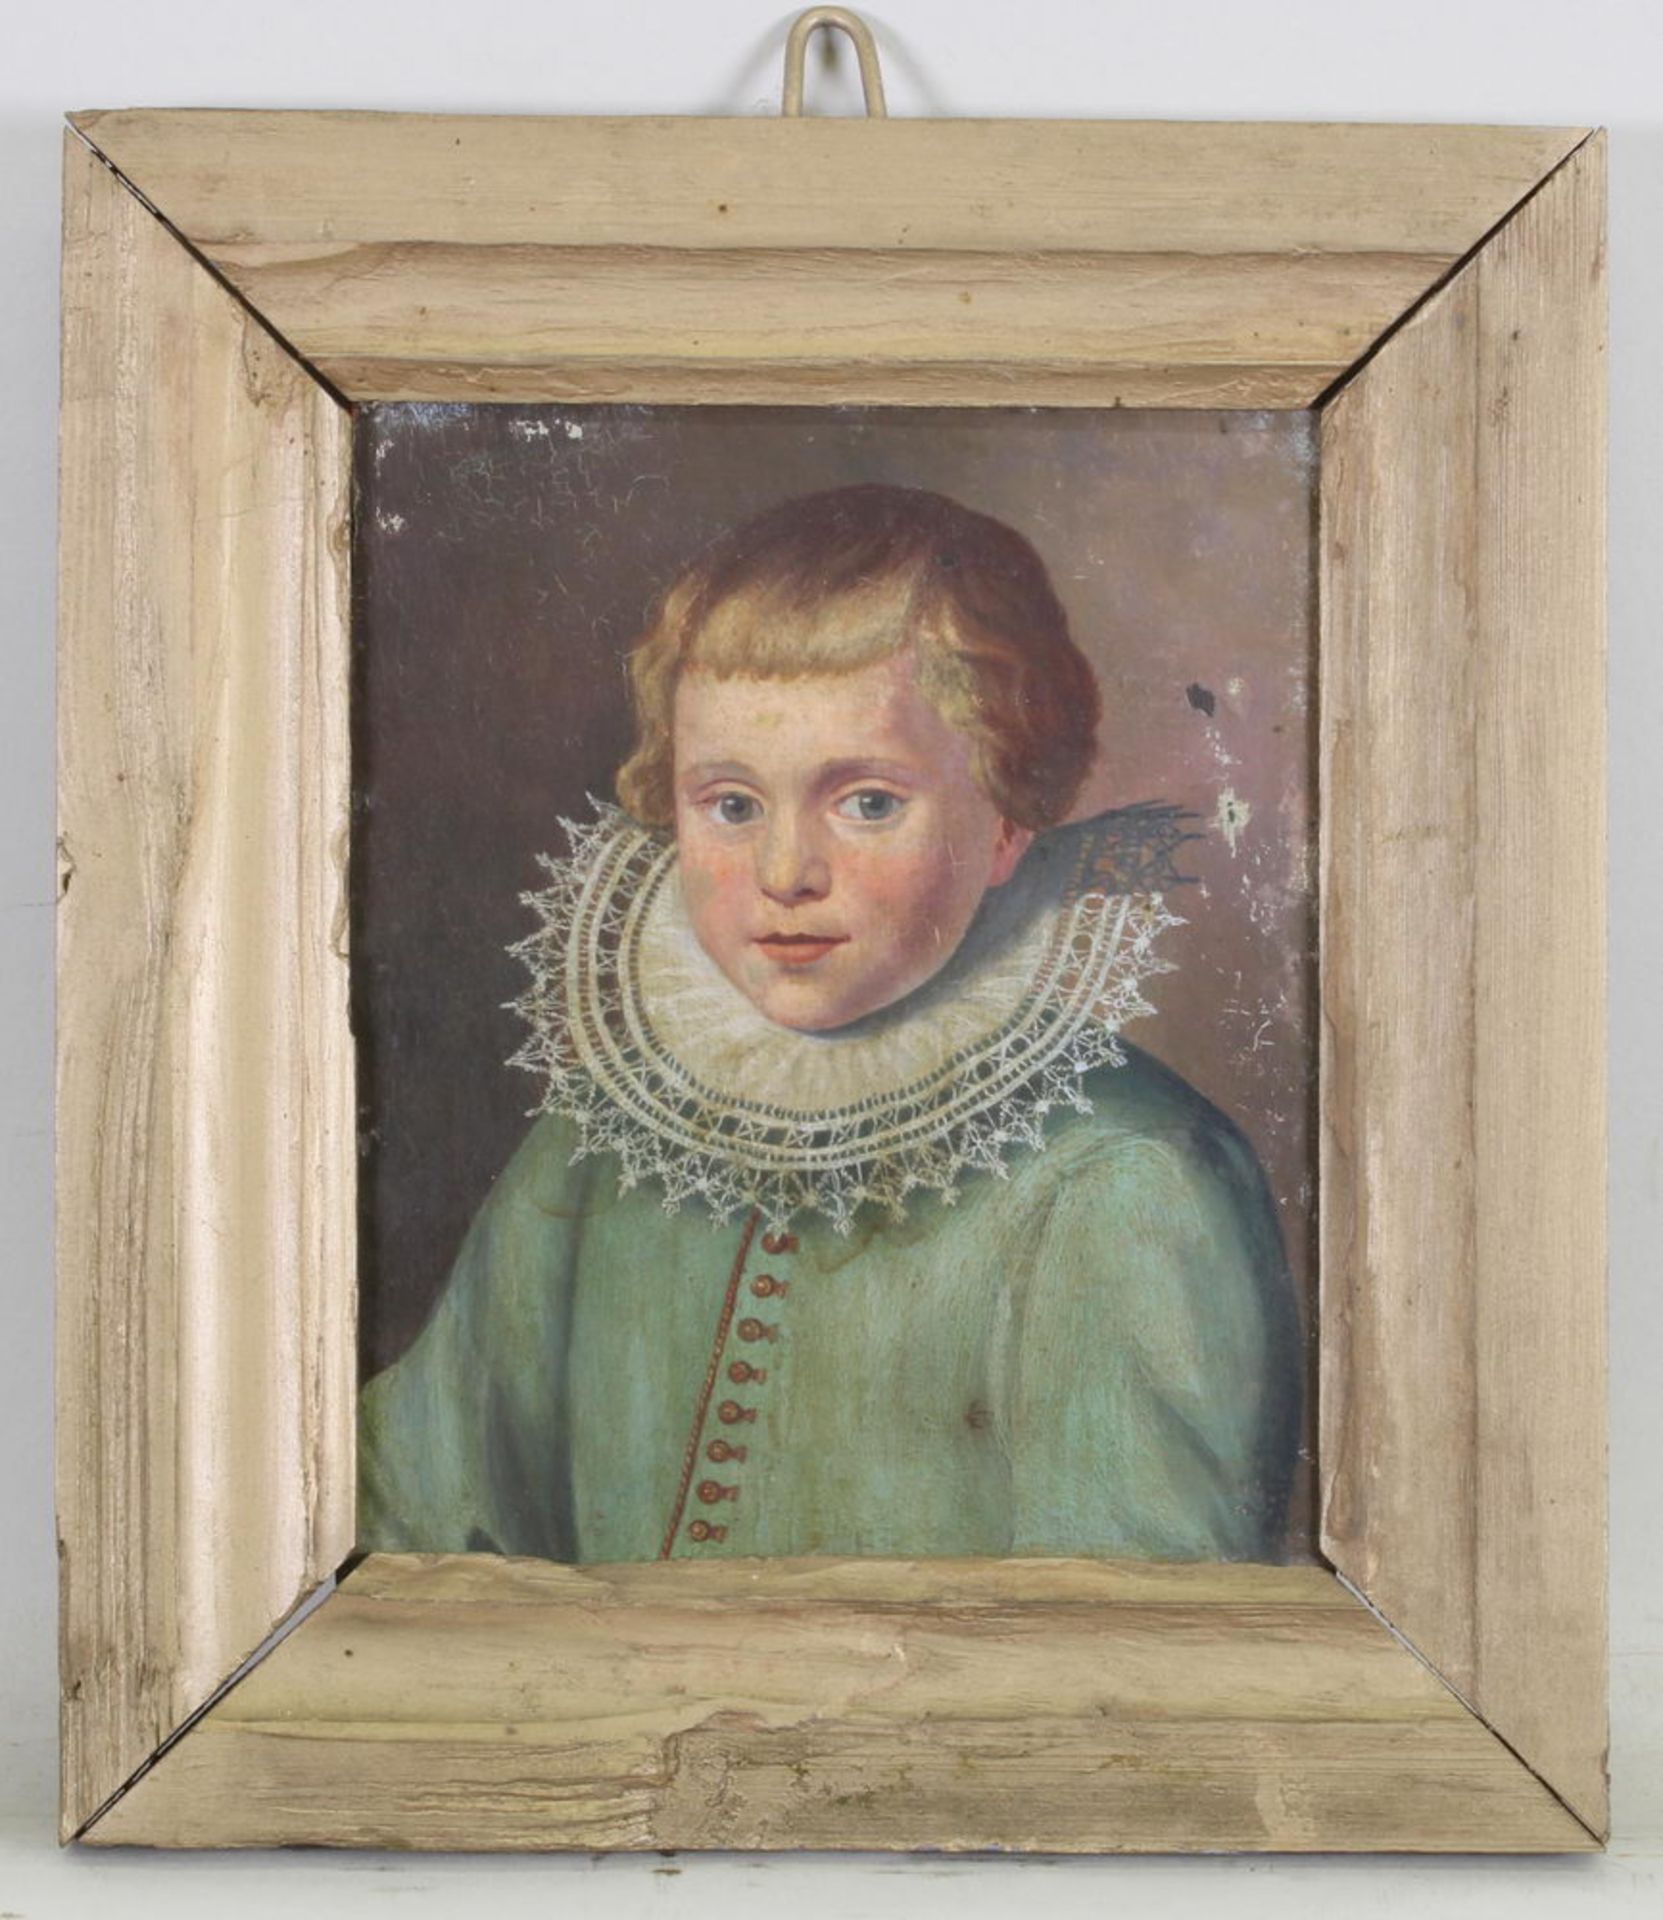 Porträtmaler (19. Jh.), "Knabenbildnis", Öl auf Metall, 15 x 12 cm, kleine Bereibungen und Farbab - Image 2 of 3